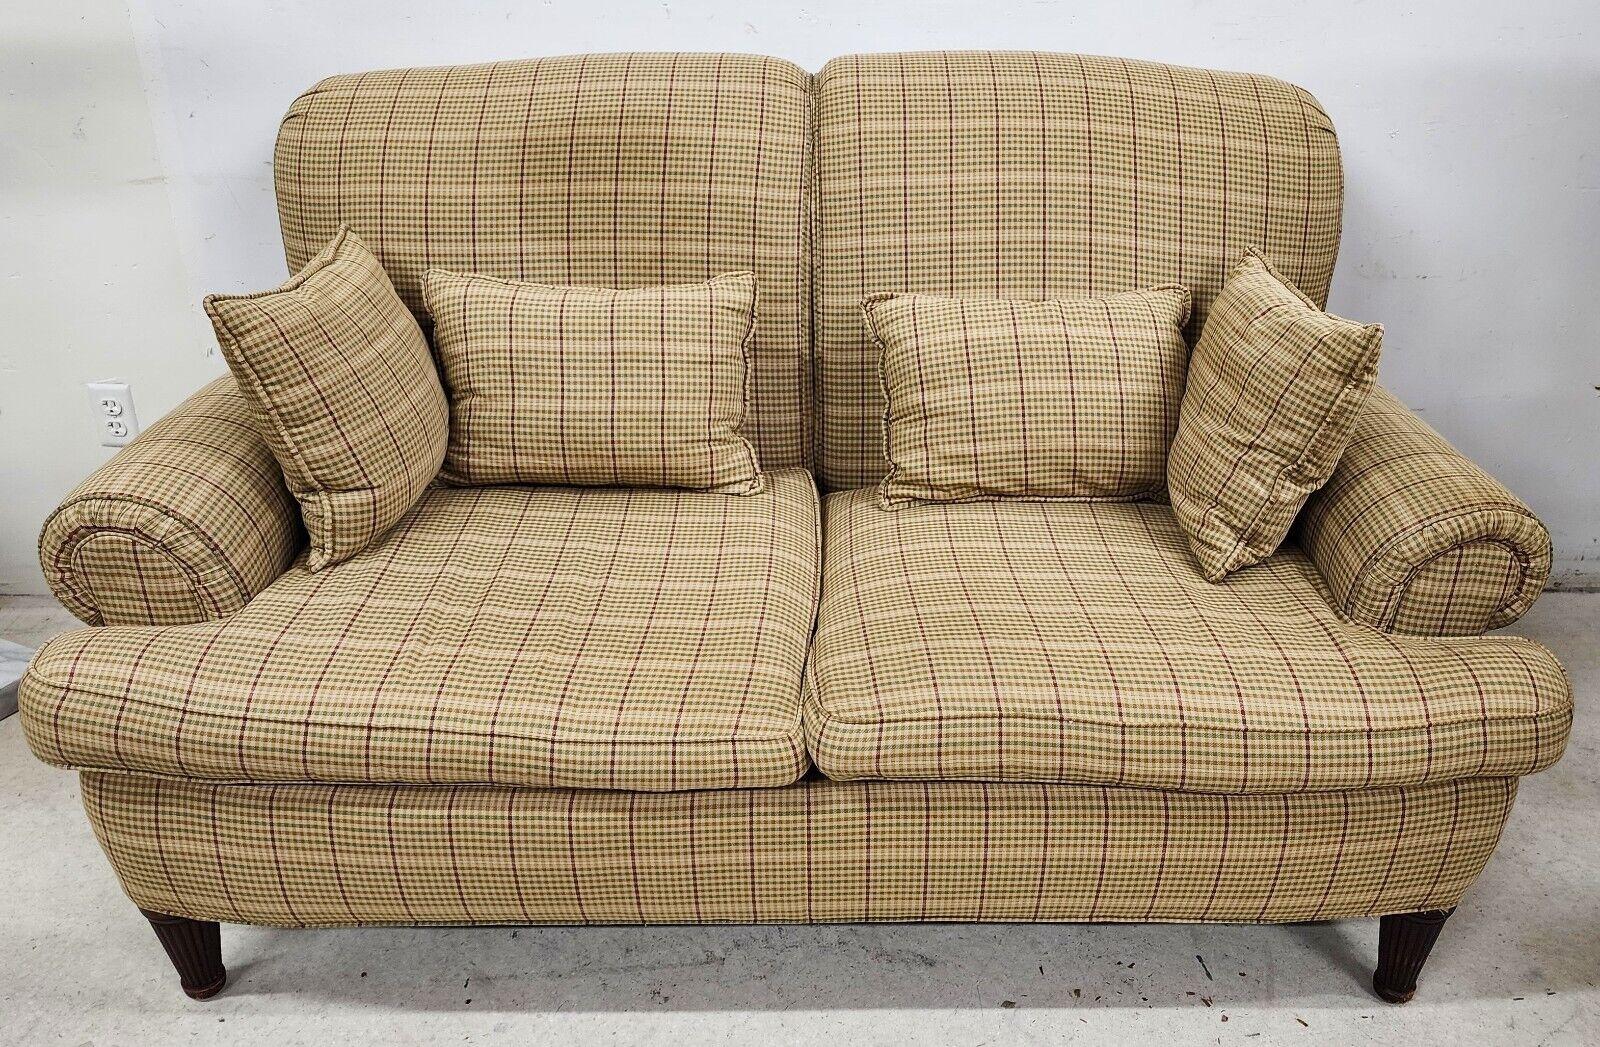 Angebot Einer unserer jüngsten Palm Beach Estate feine Möbel Erwerb eines
Vintage Couchgarnitur von Ralph Lauren
Wird mit 4 passenden Kissen geliefert

Ungefähre Maße in Zoll
38